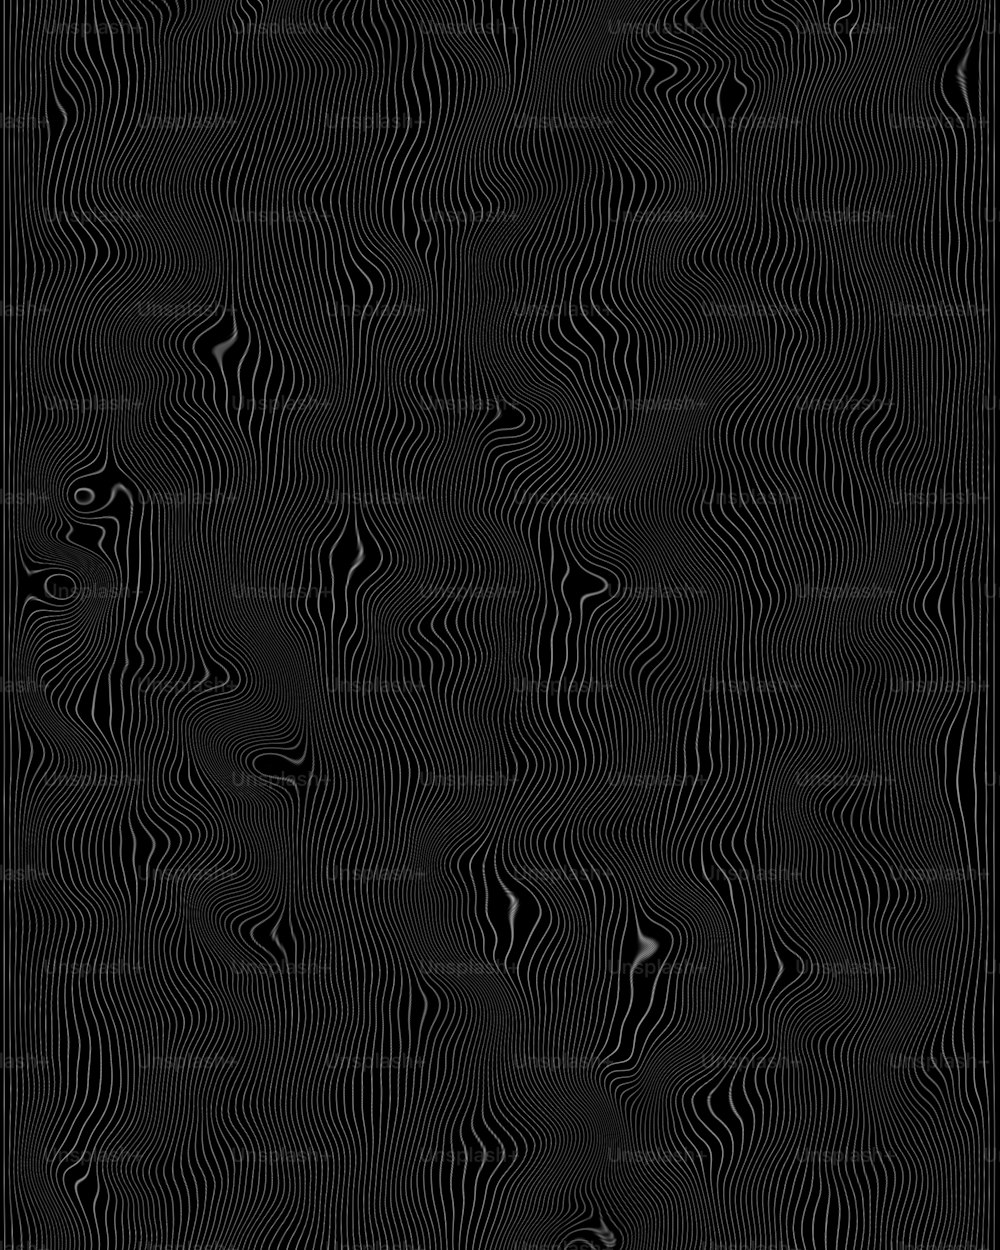 um fundo preto com linhas onduladas